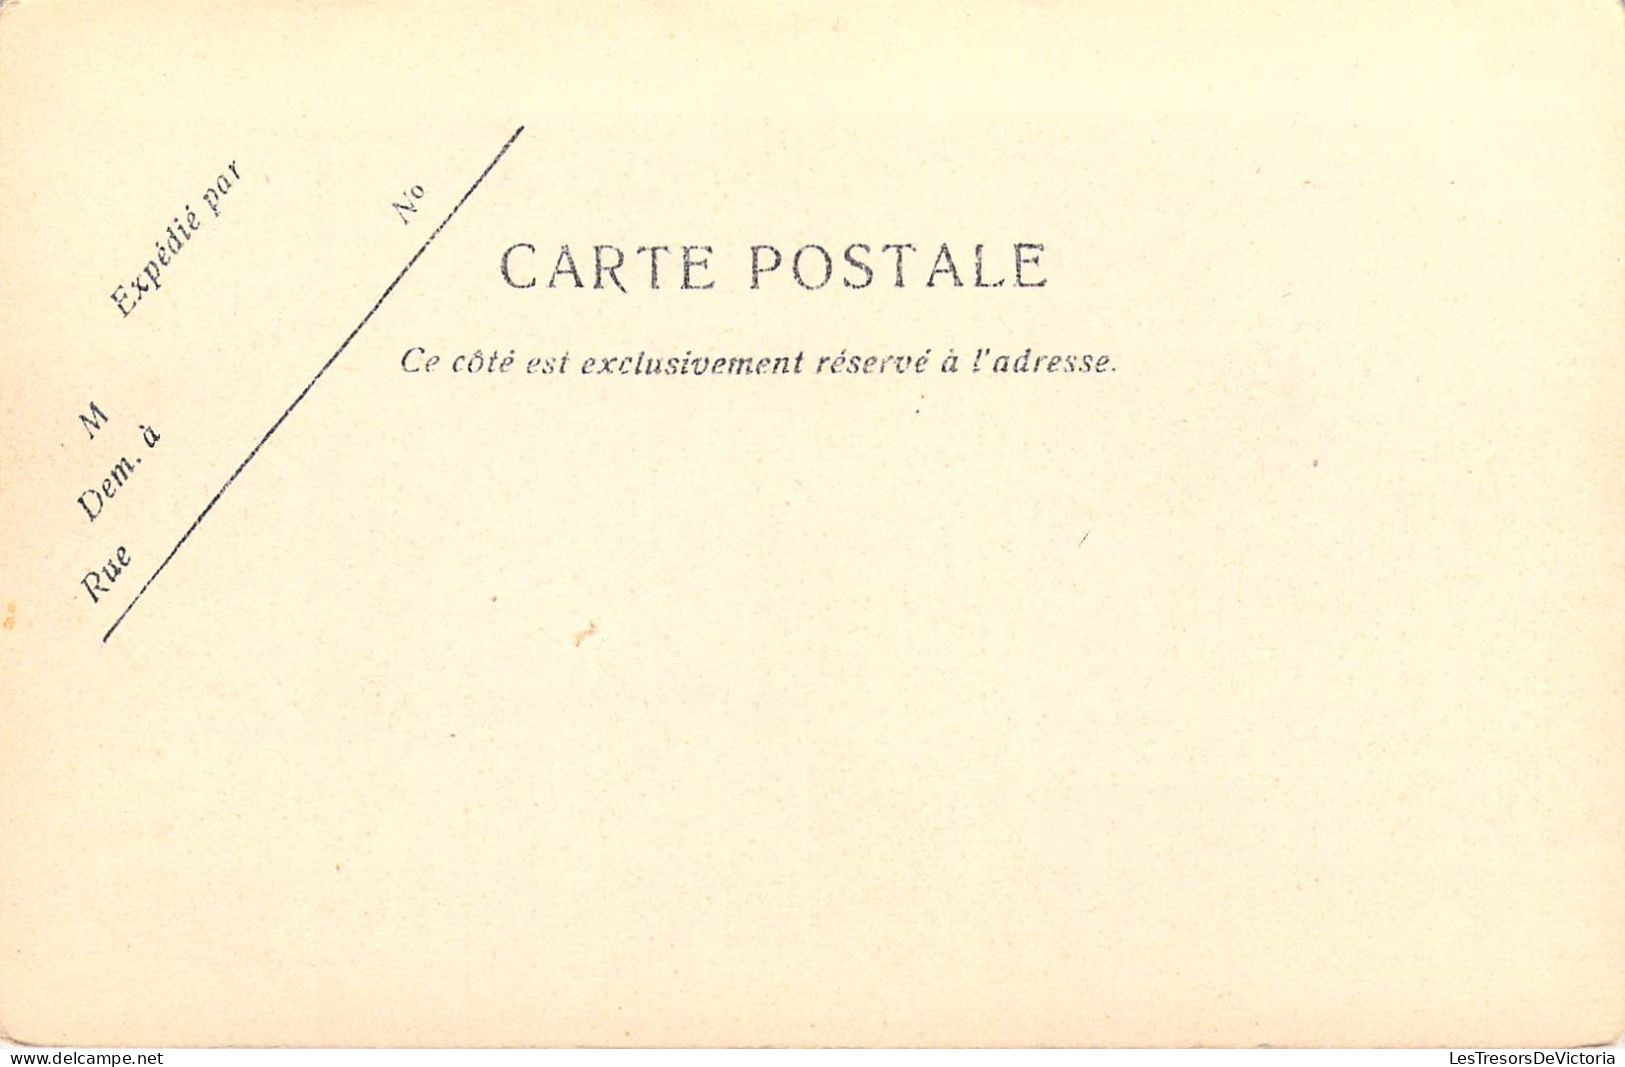 BELGIQUE - LIEGE - Le Passage D'eau Beaujot 1836 - Quai Marcélis - Carte Postale Ancienne - Liege